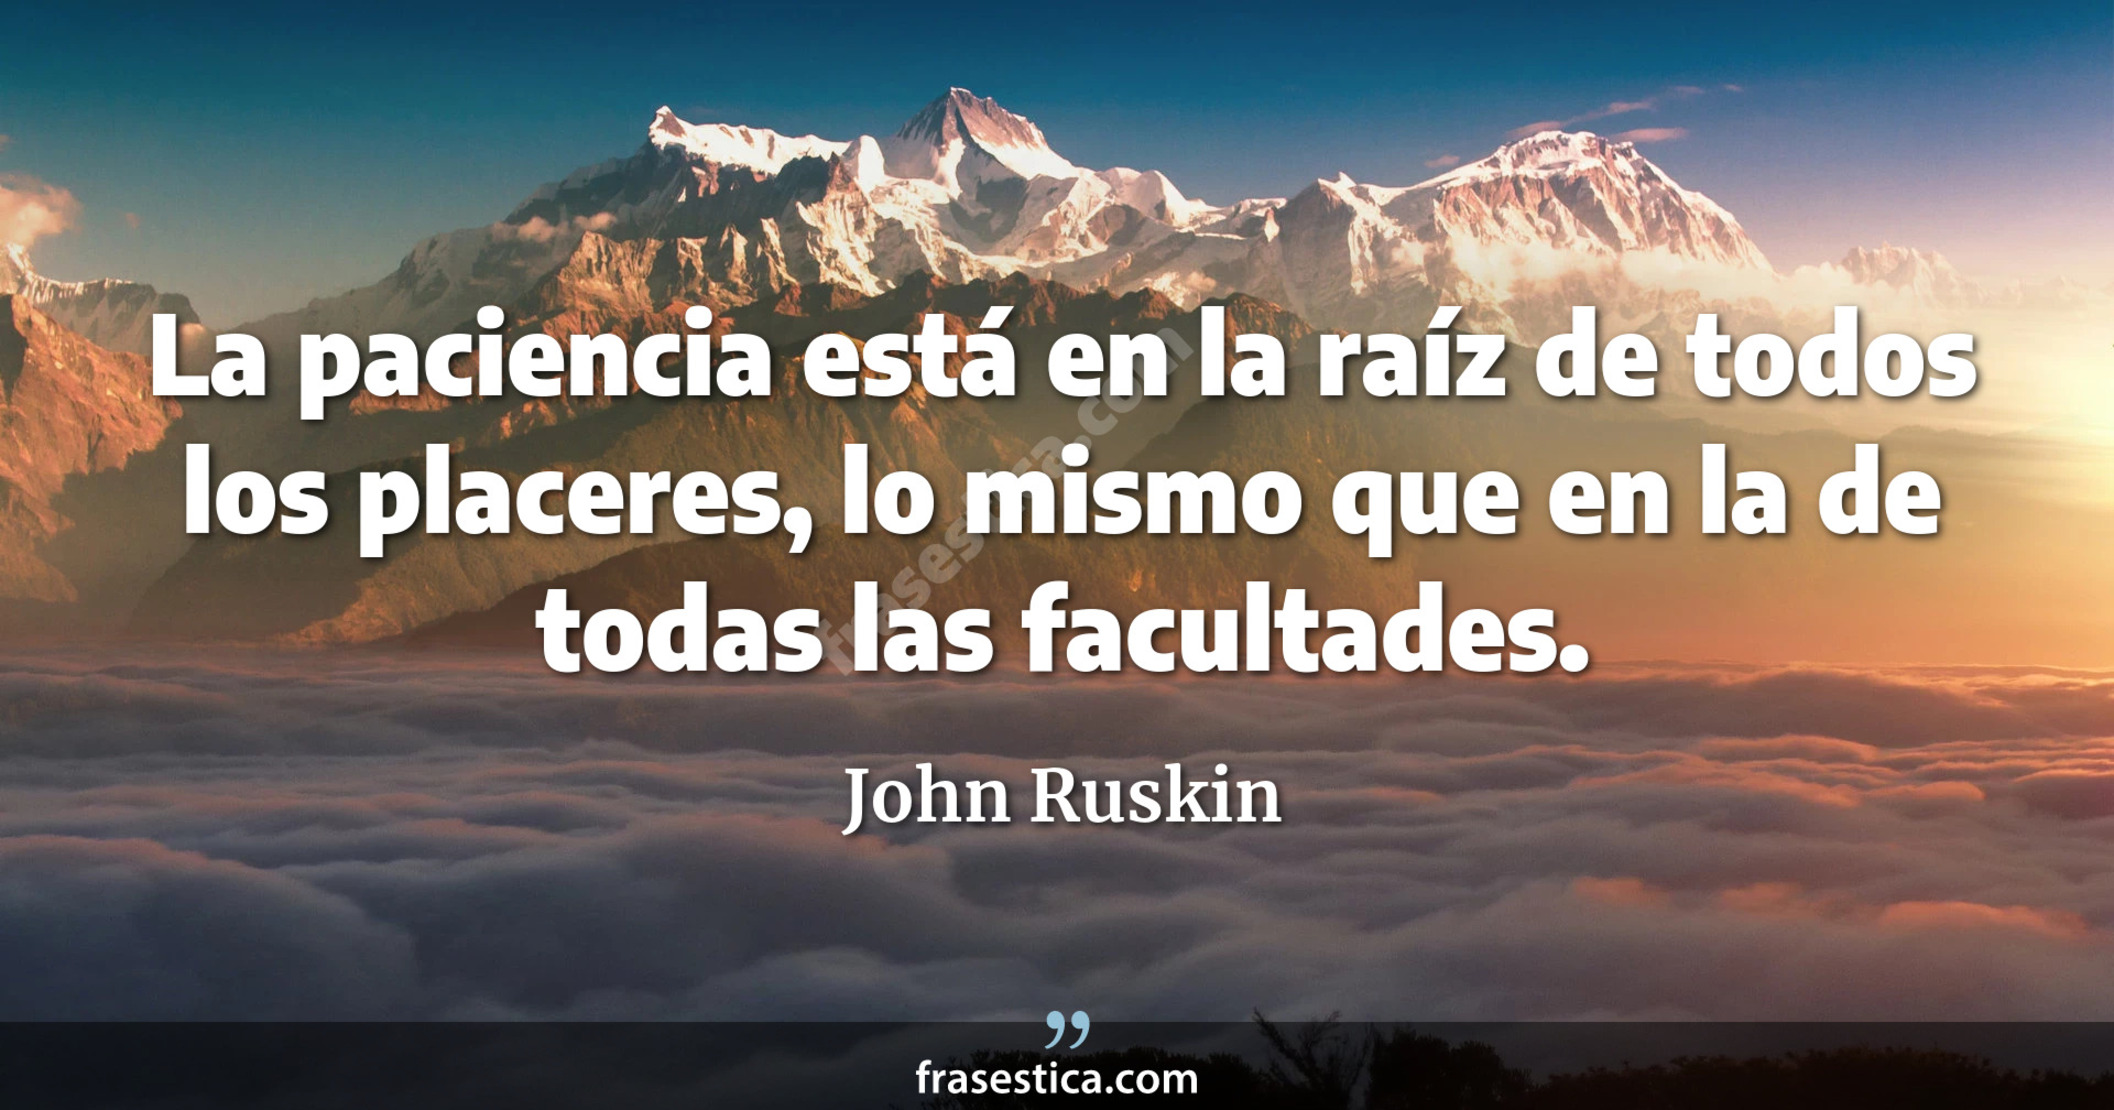 La paciencia está en la raíz de todos los placeres, lo mismo que en la de todas las facultades. - John Ruskin